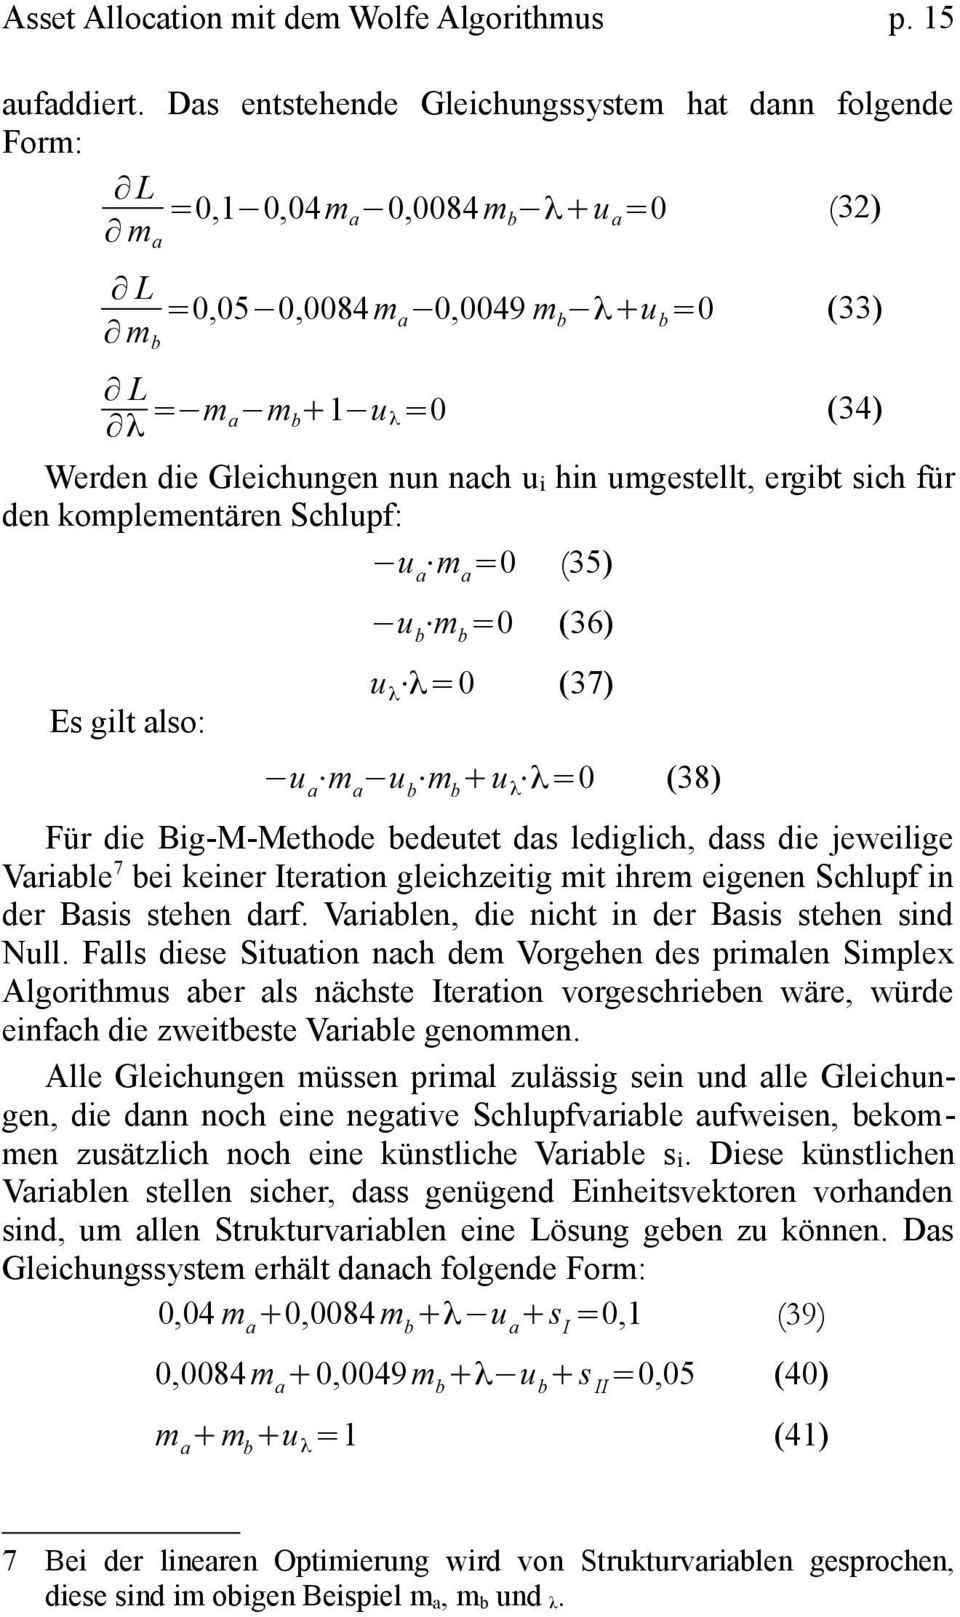 nun nach u i hin umgestellt, ergibt sich für den komplementären Schlupf: u a m a =0 (35) Es gilt also: u b m b =0 (36) u λ λ=0 (37) u a m a u b m b +u λ λ=0 (38) Für die Big-M-Methode bedeutet das